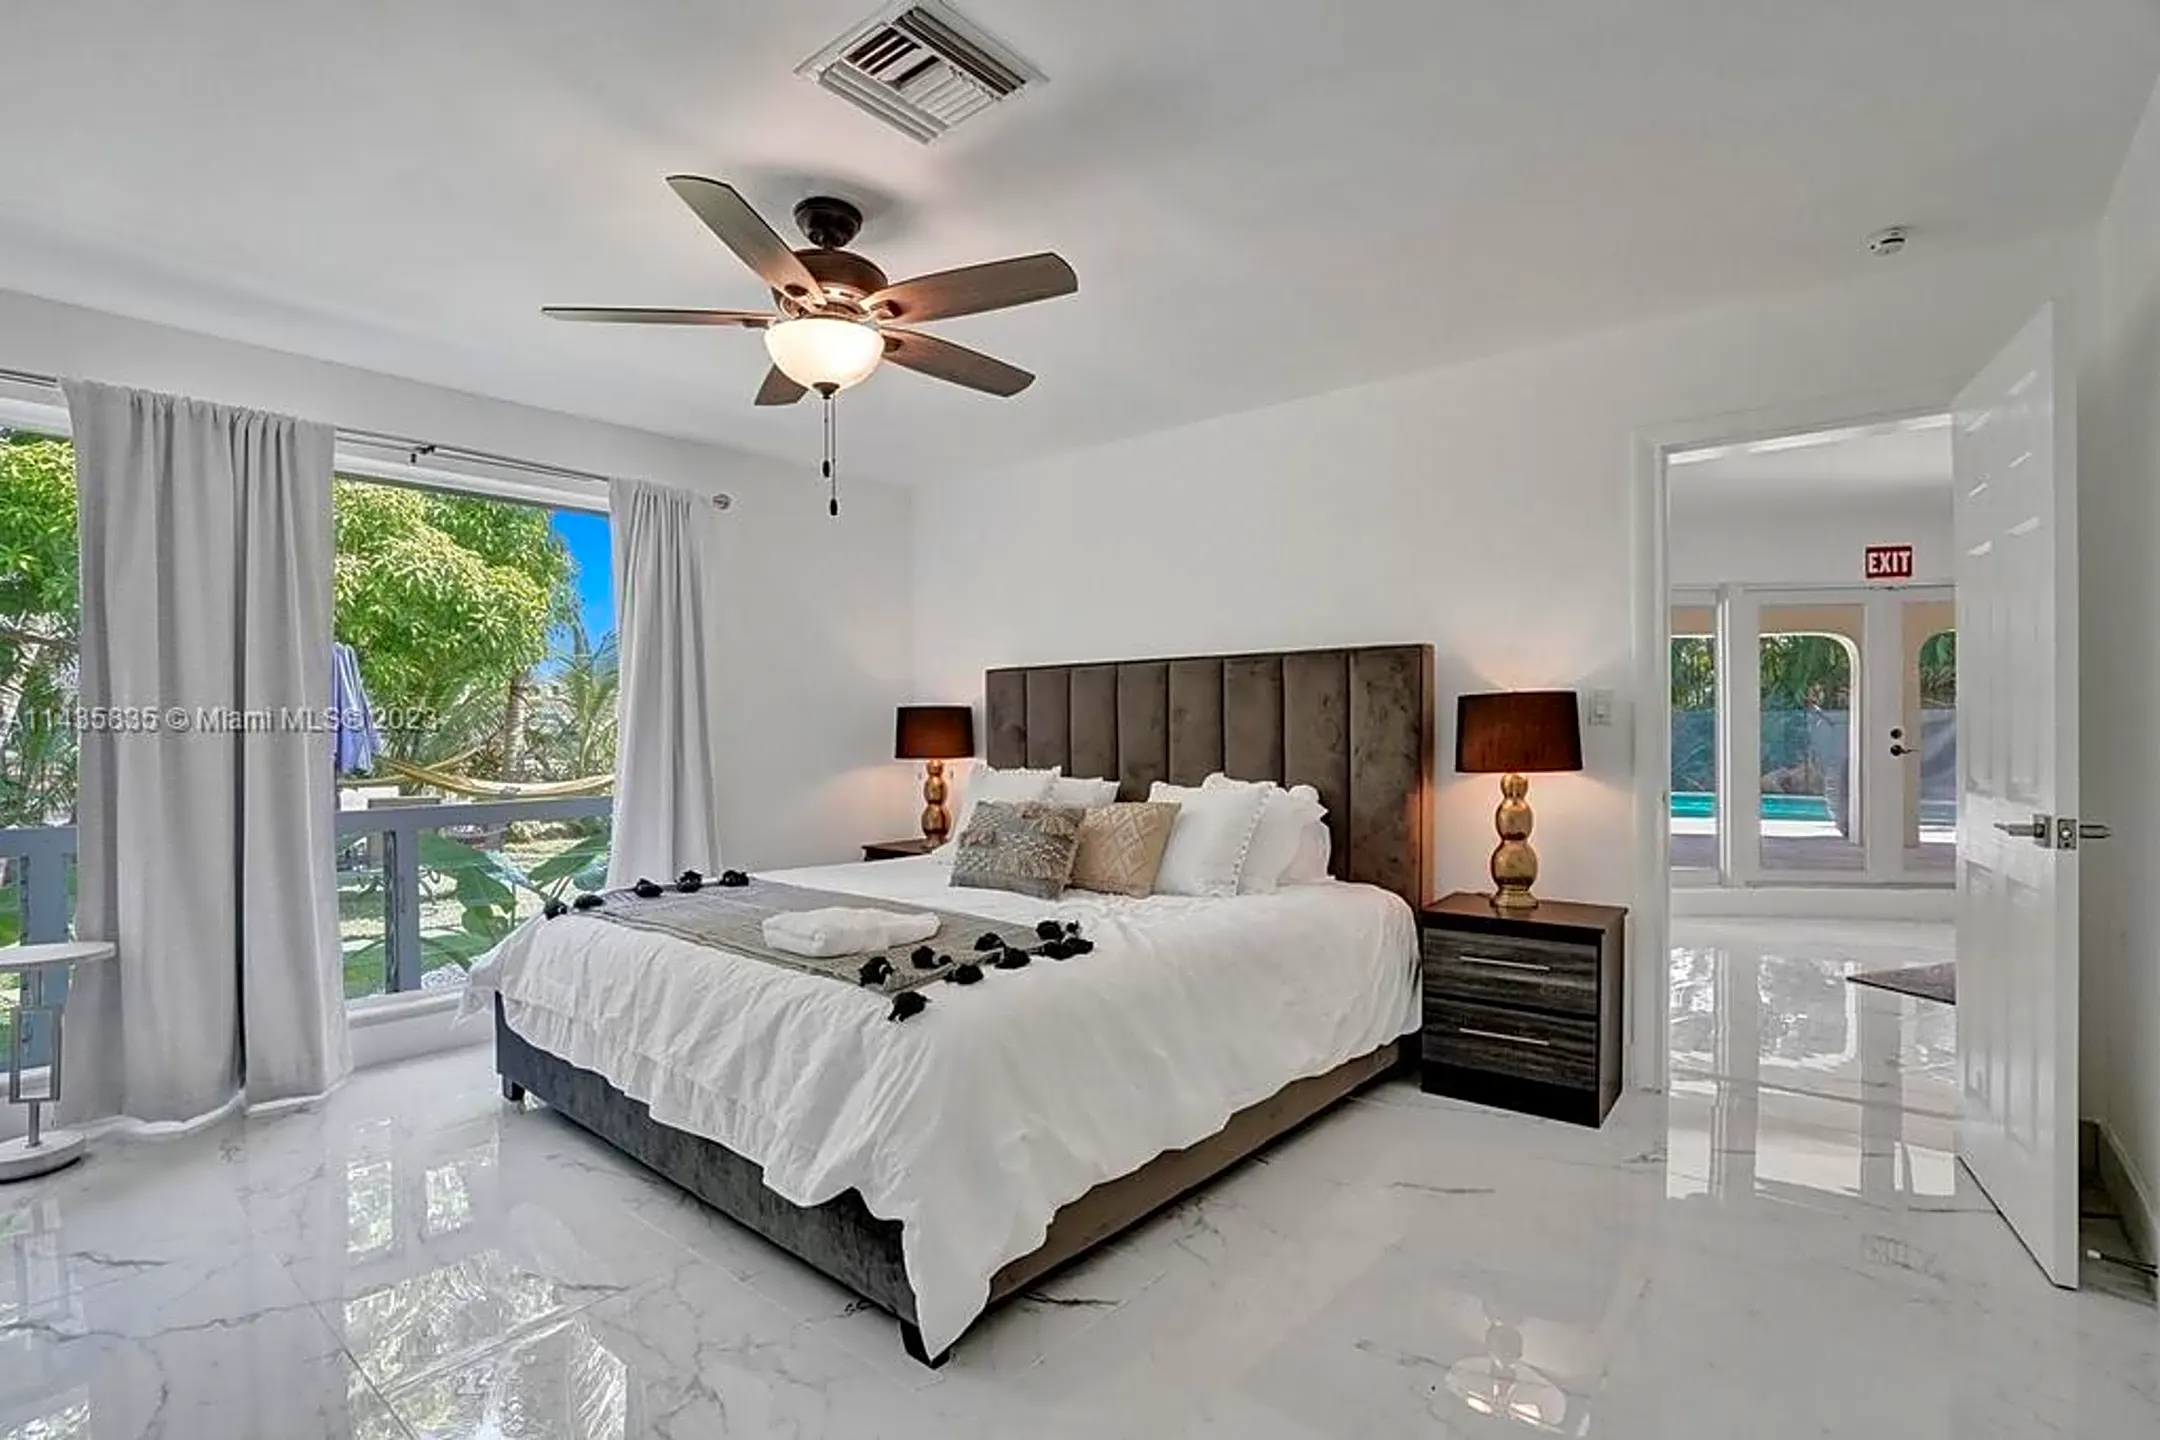 Bedroom - 1809 Coral Gardens Dr - Fort Lauderdale, FL